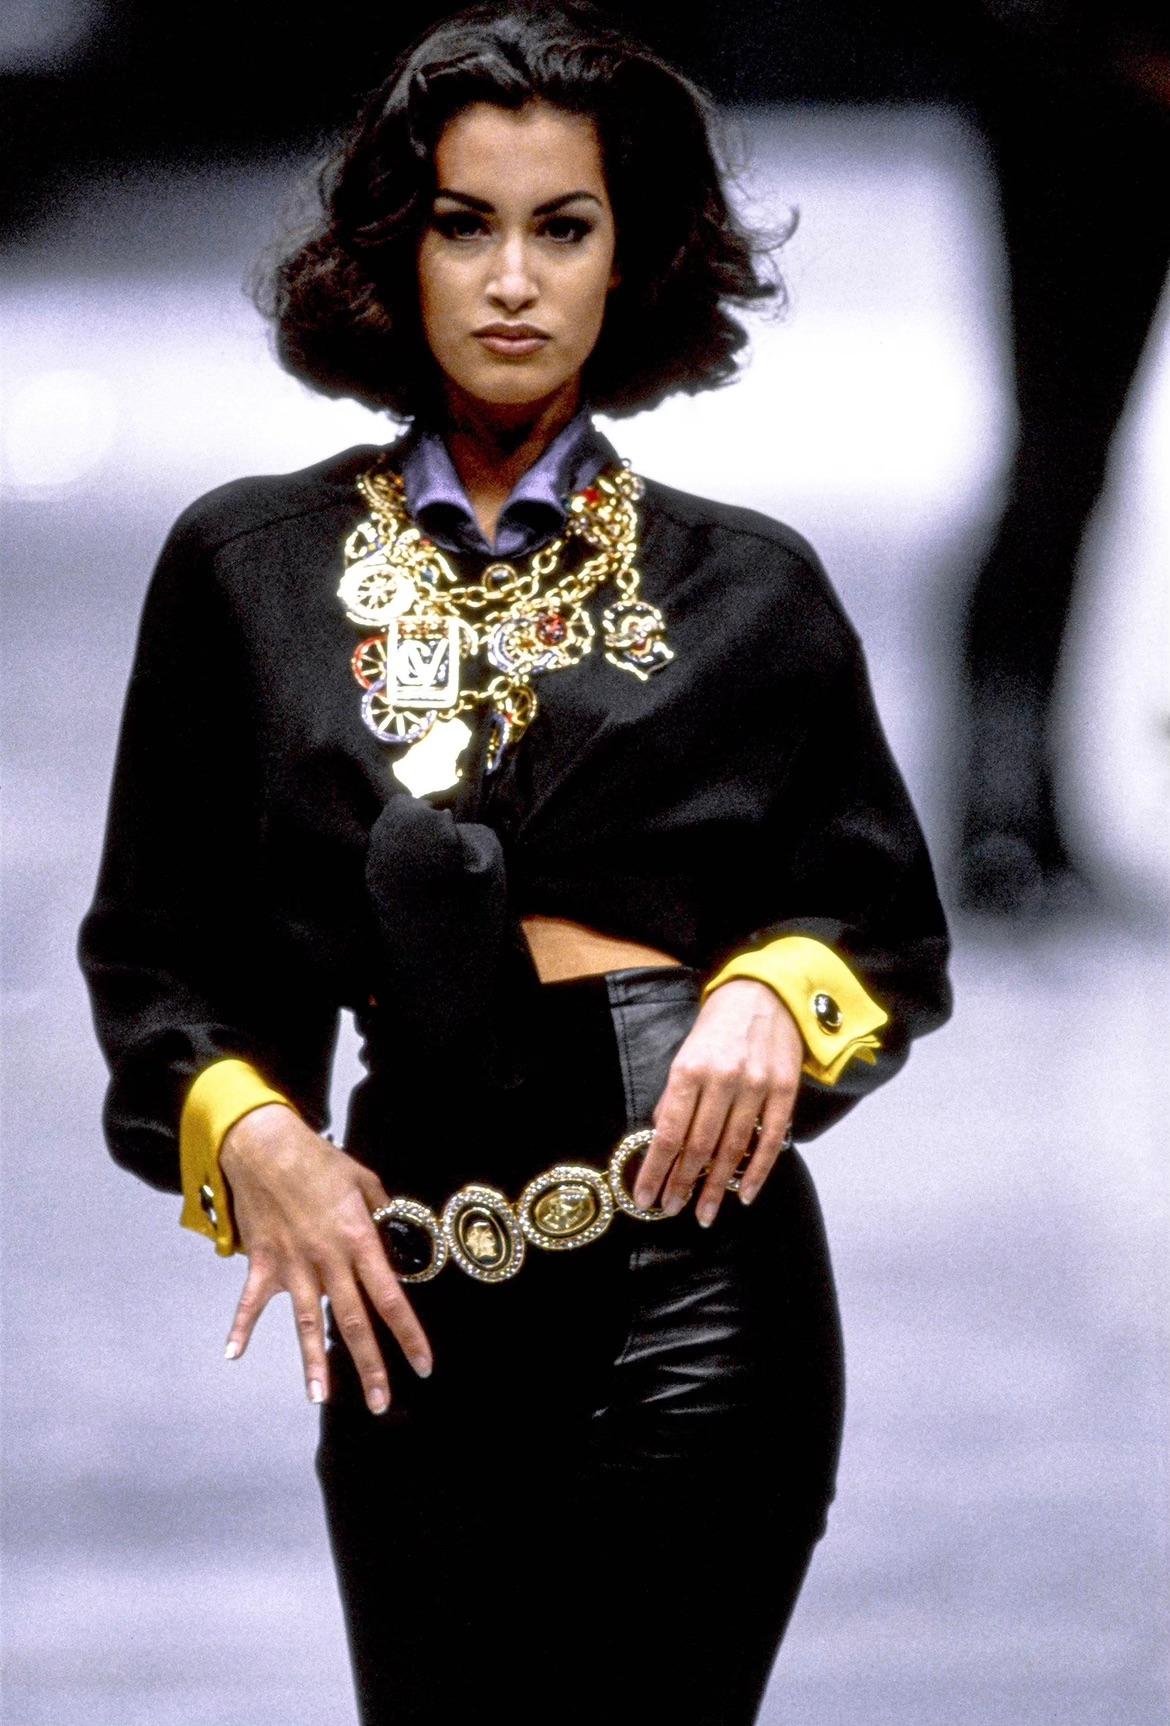 Voici une fabuleuse ceinture à chaîne Gianni Versace en camaïeu d'or, conçue par Gianni Versace. Dans la collection Automne/Hiver 1991, des ceintures en chaîne similaires avec des camées ont fait leur apparition sur les podiums de la saison. Cette